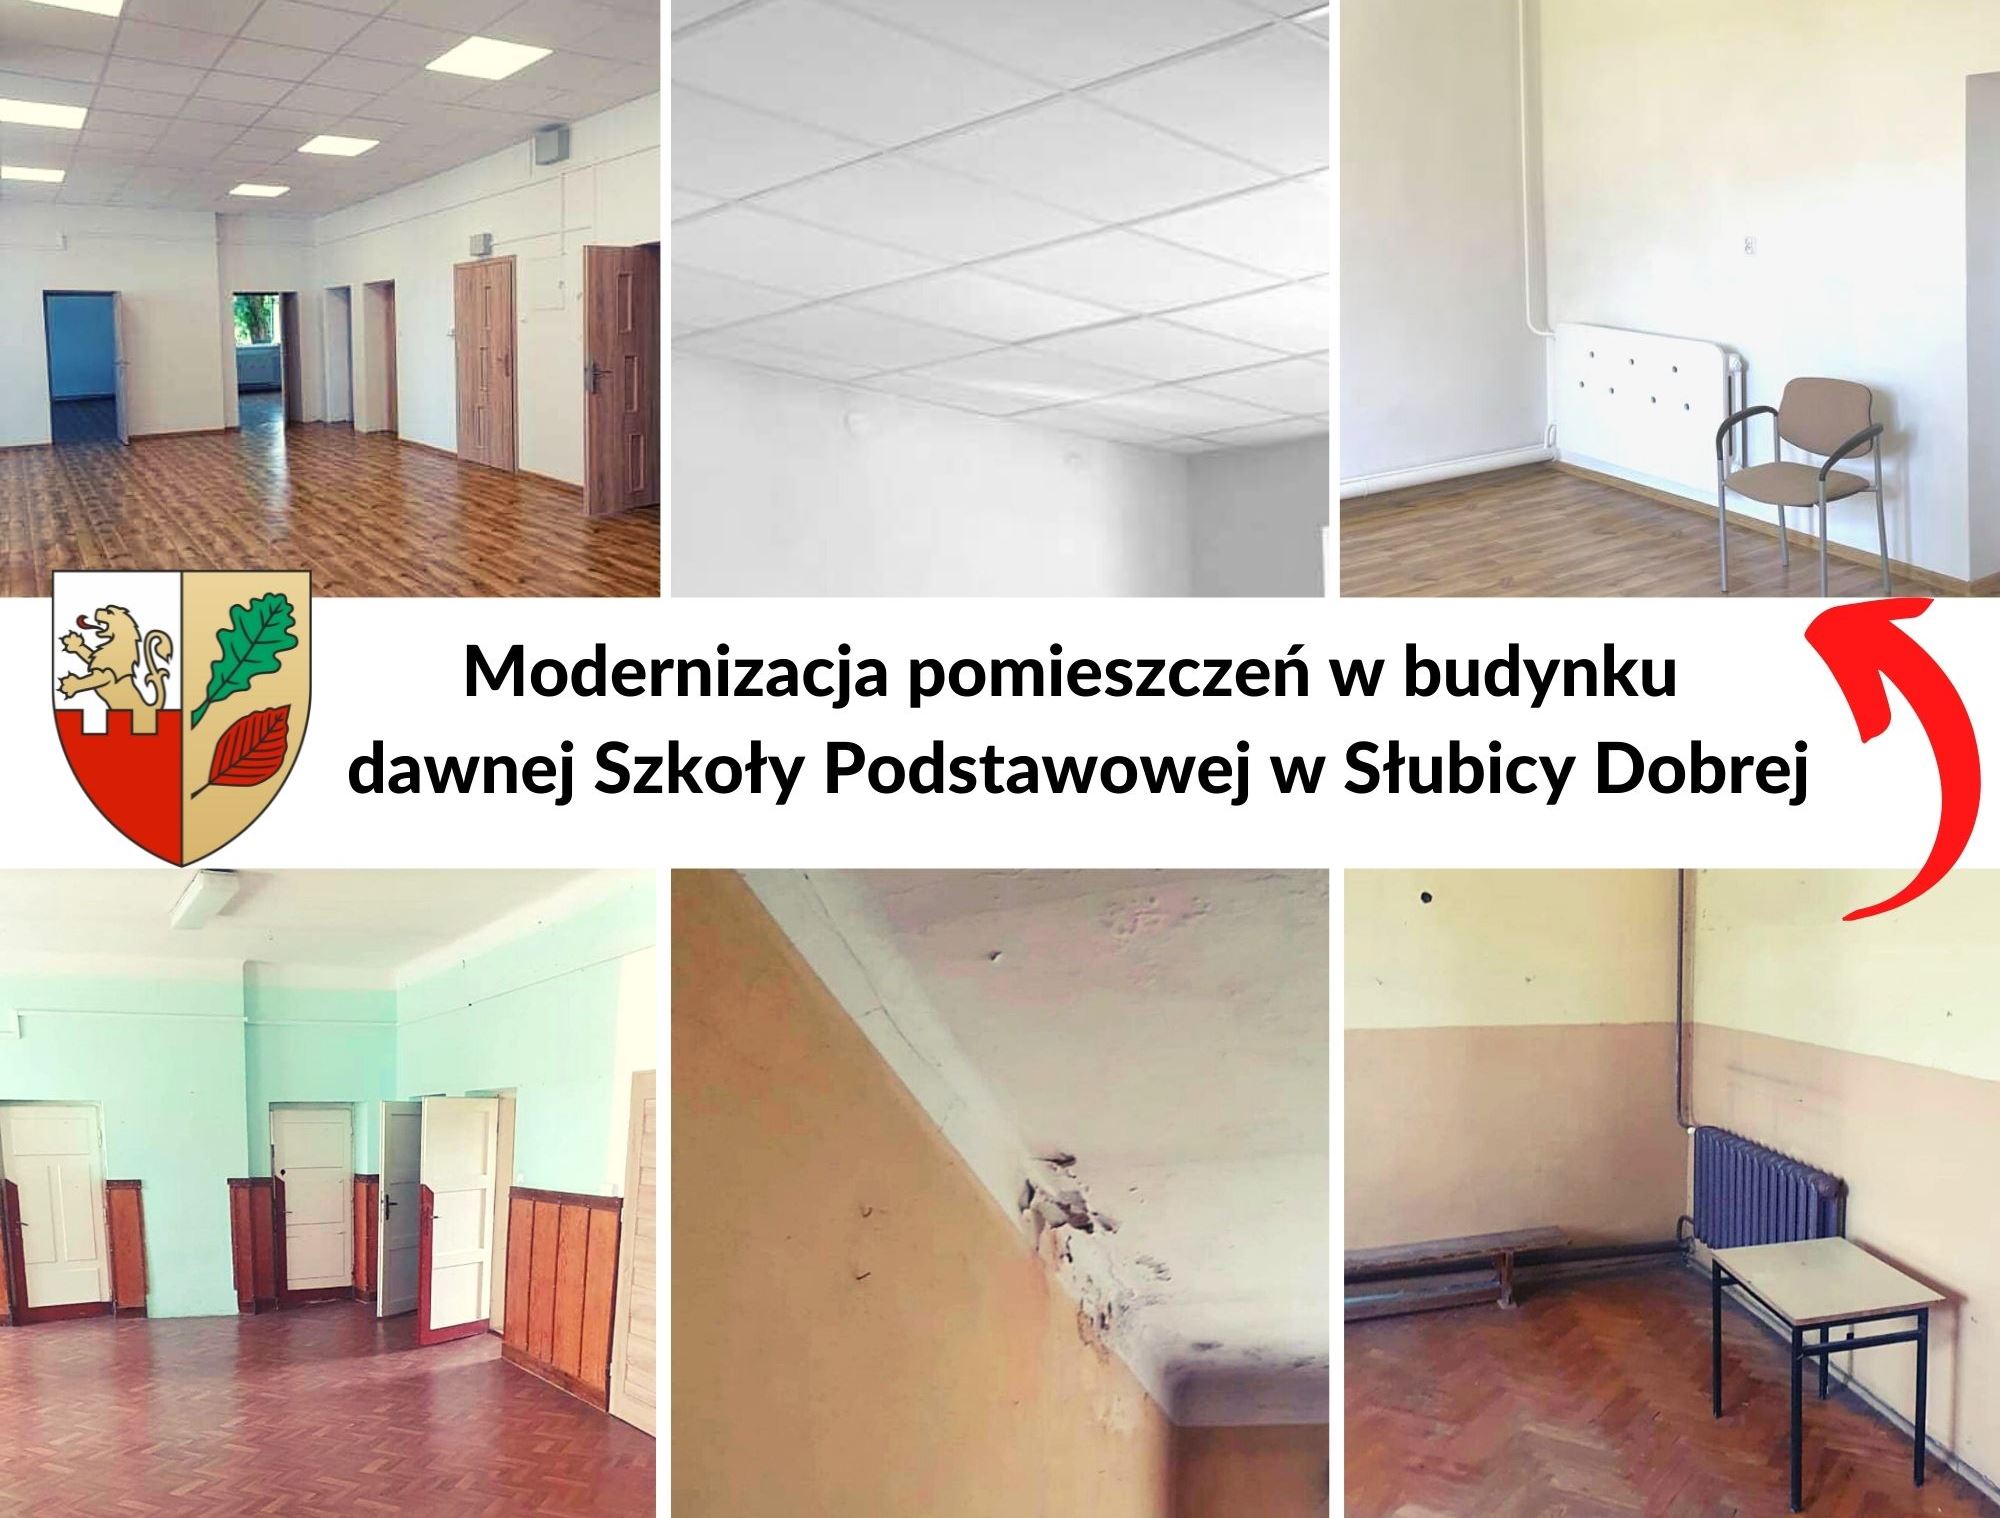 Modernizacja pomieszczeń w budynku dawnej szkoły w Słubicy Dobrej